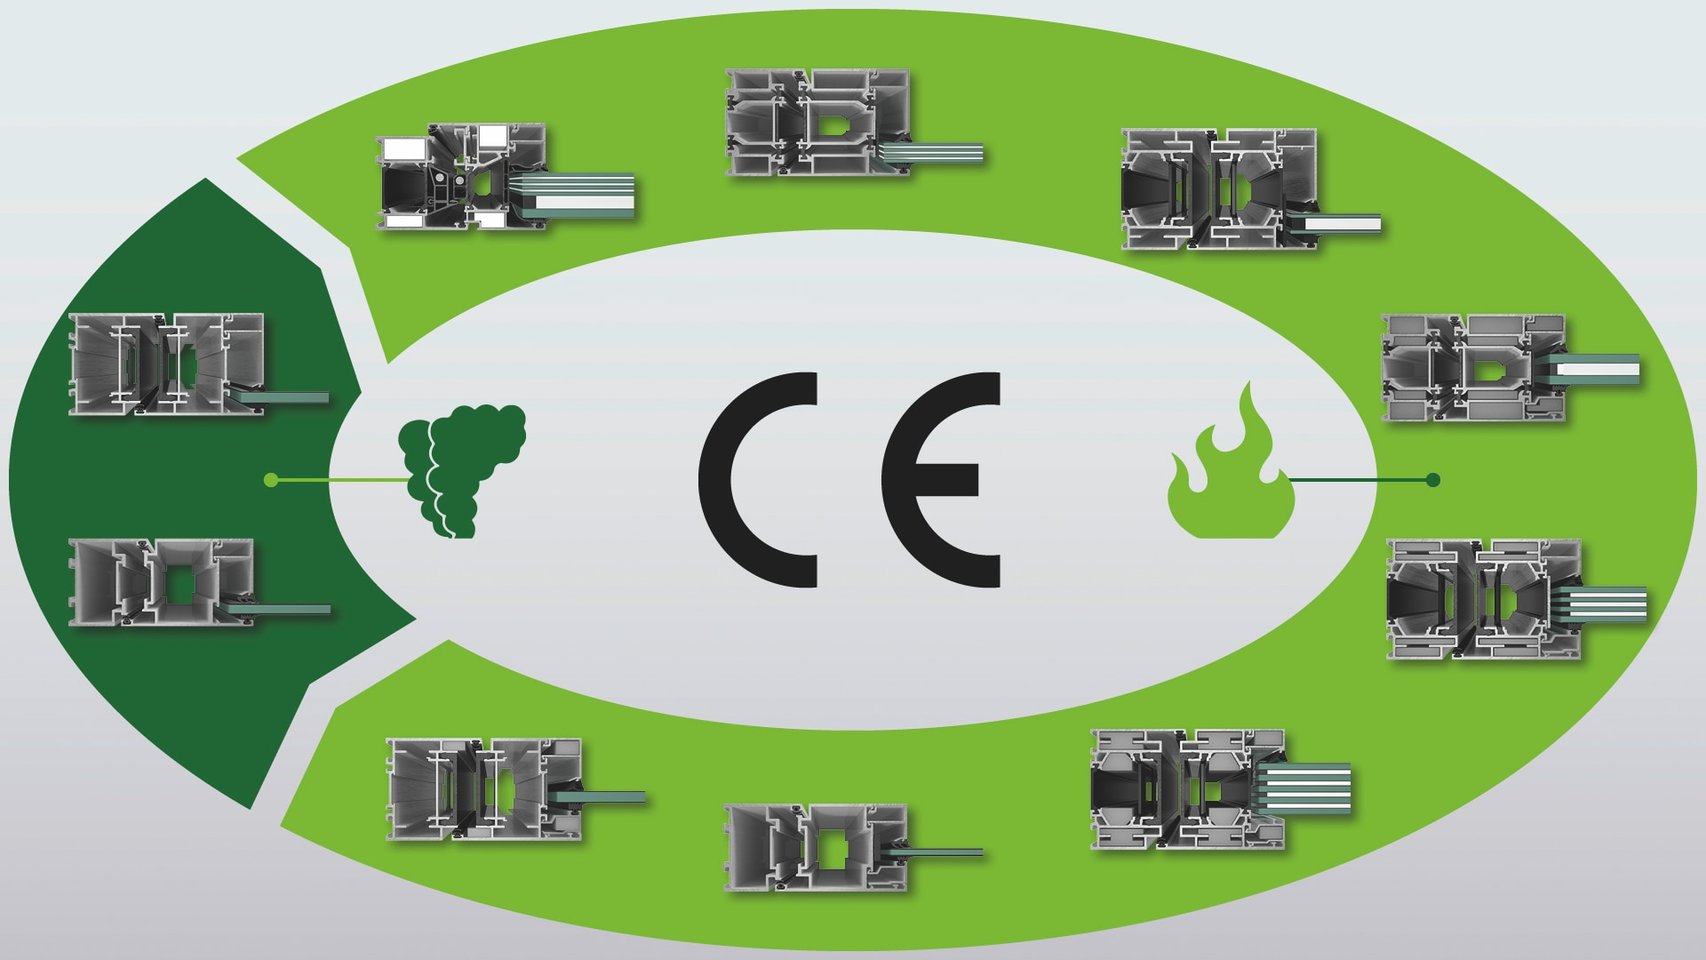 Banner som viser CE-klassifisering for brannmotstand av Schüco produkter